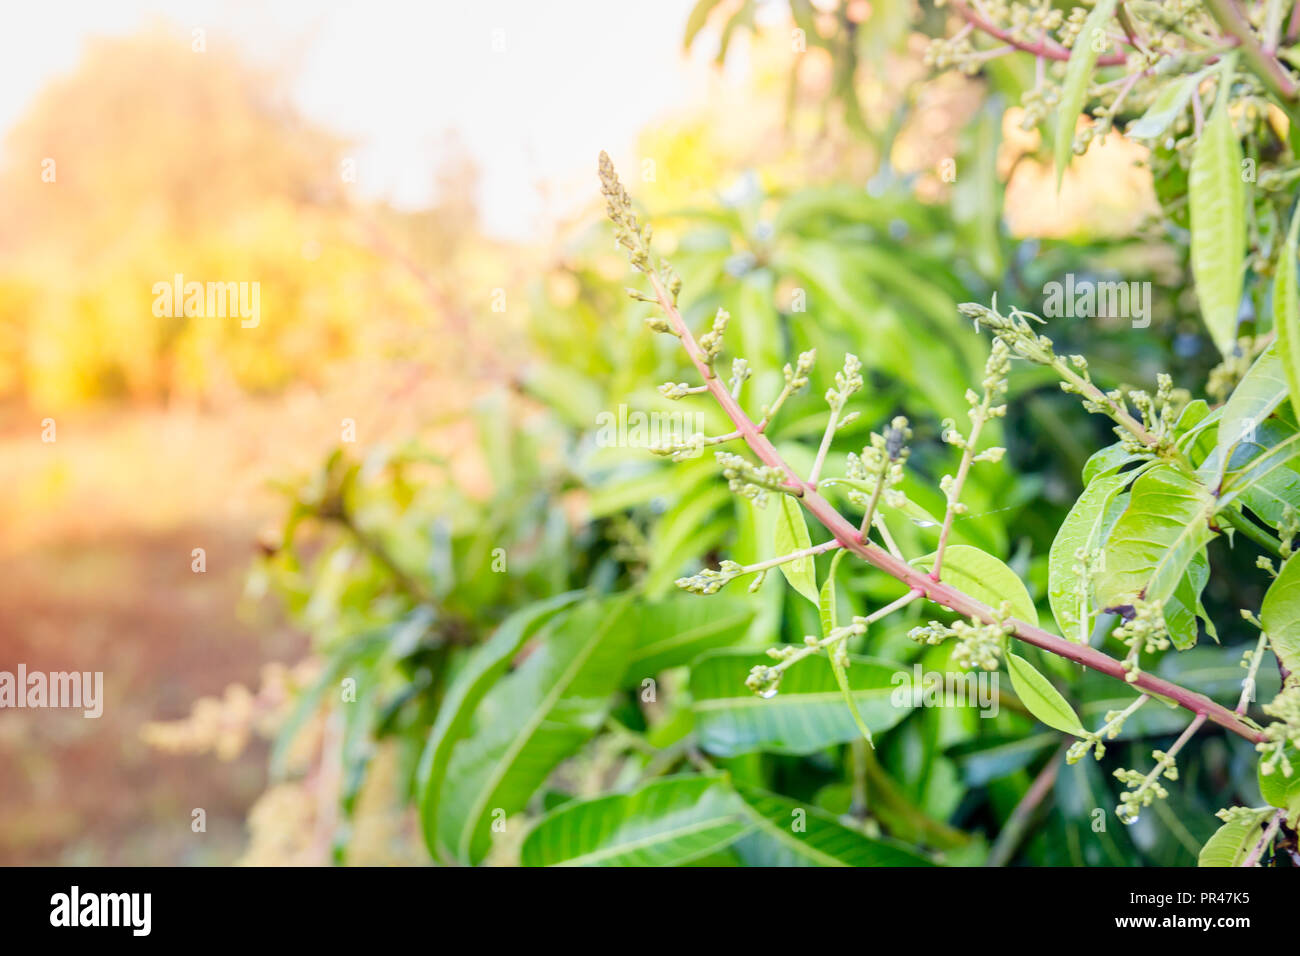 https://c8.alamy.com/comp/PR47K5/close-up-of-a-flowering-agriculture-mango-grove-PR47K5.jpg